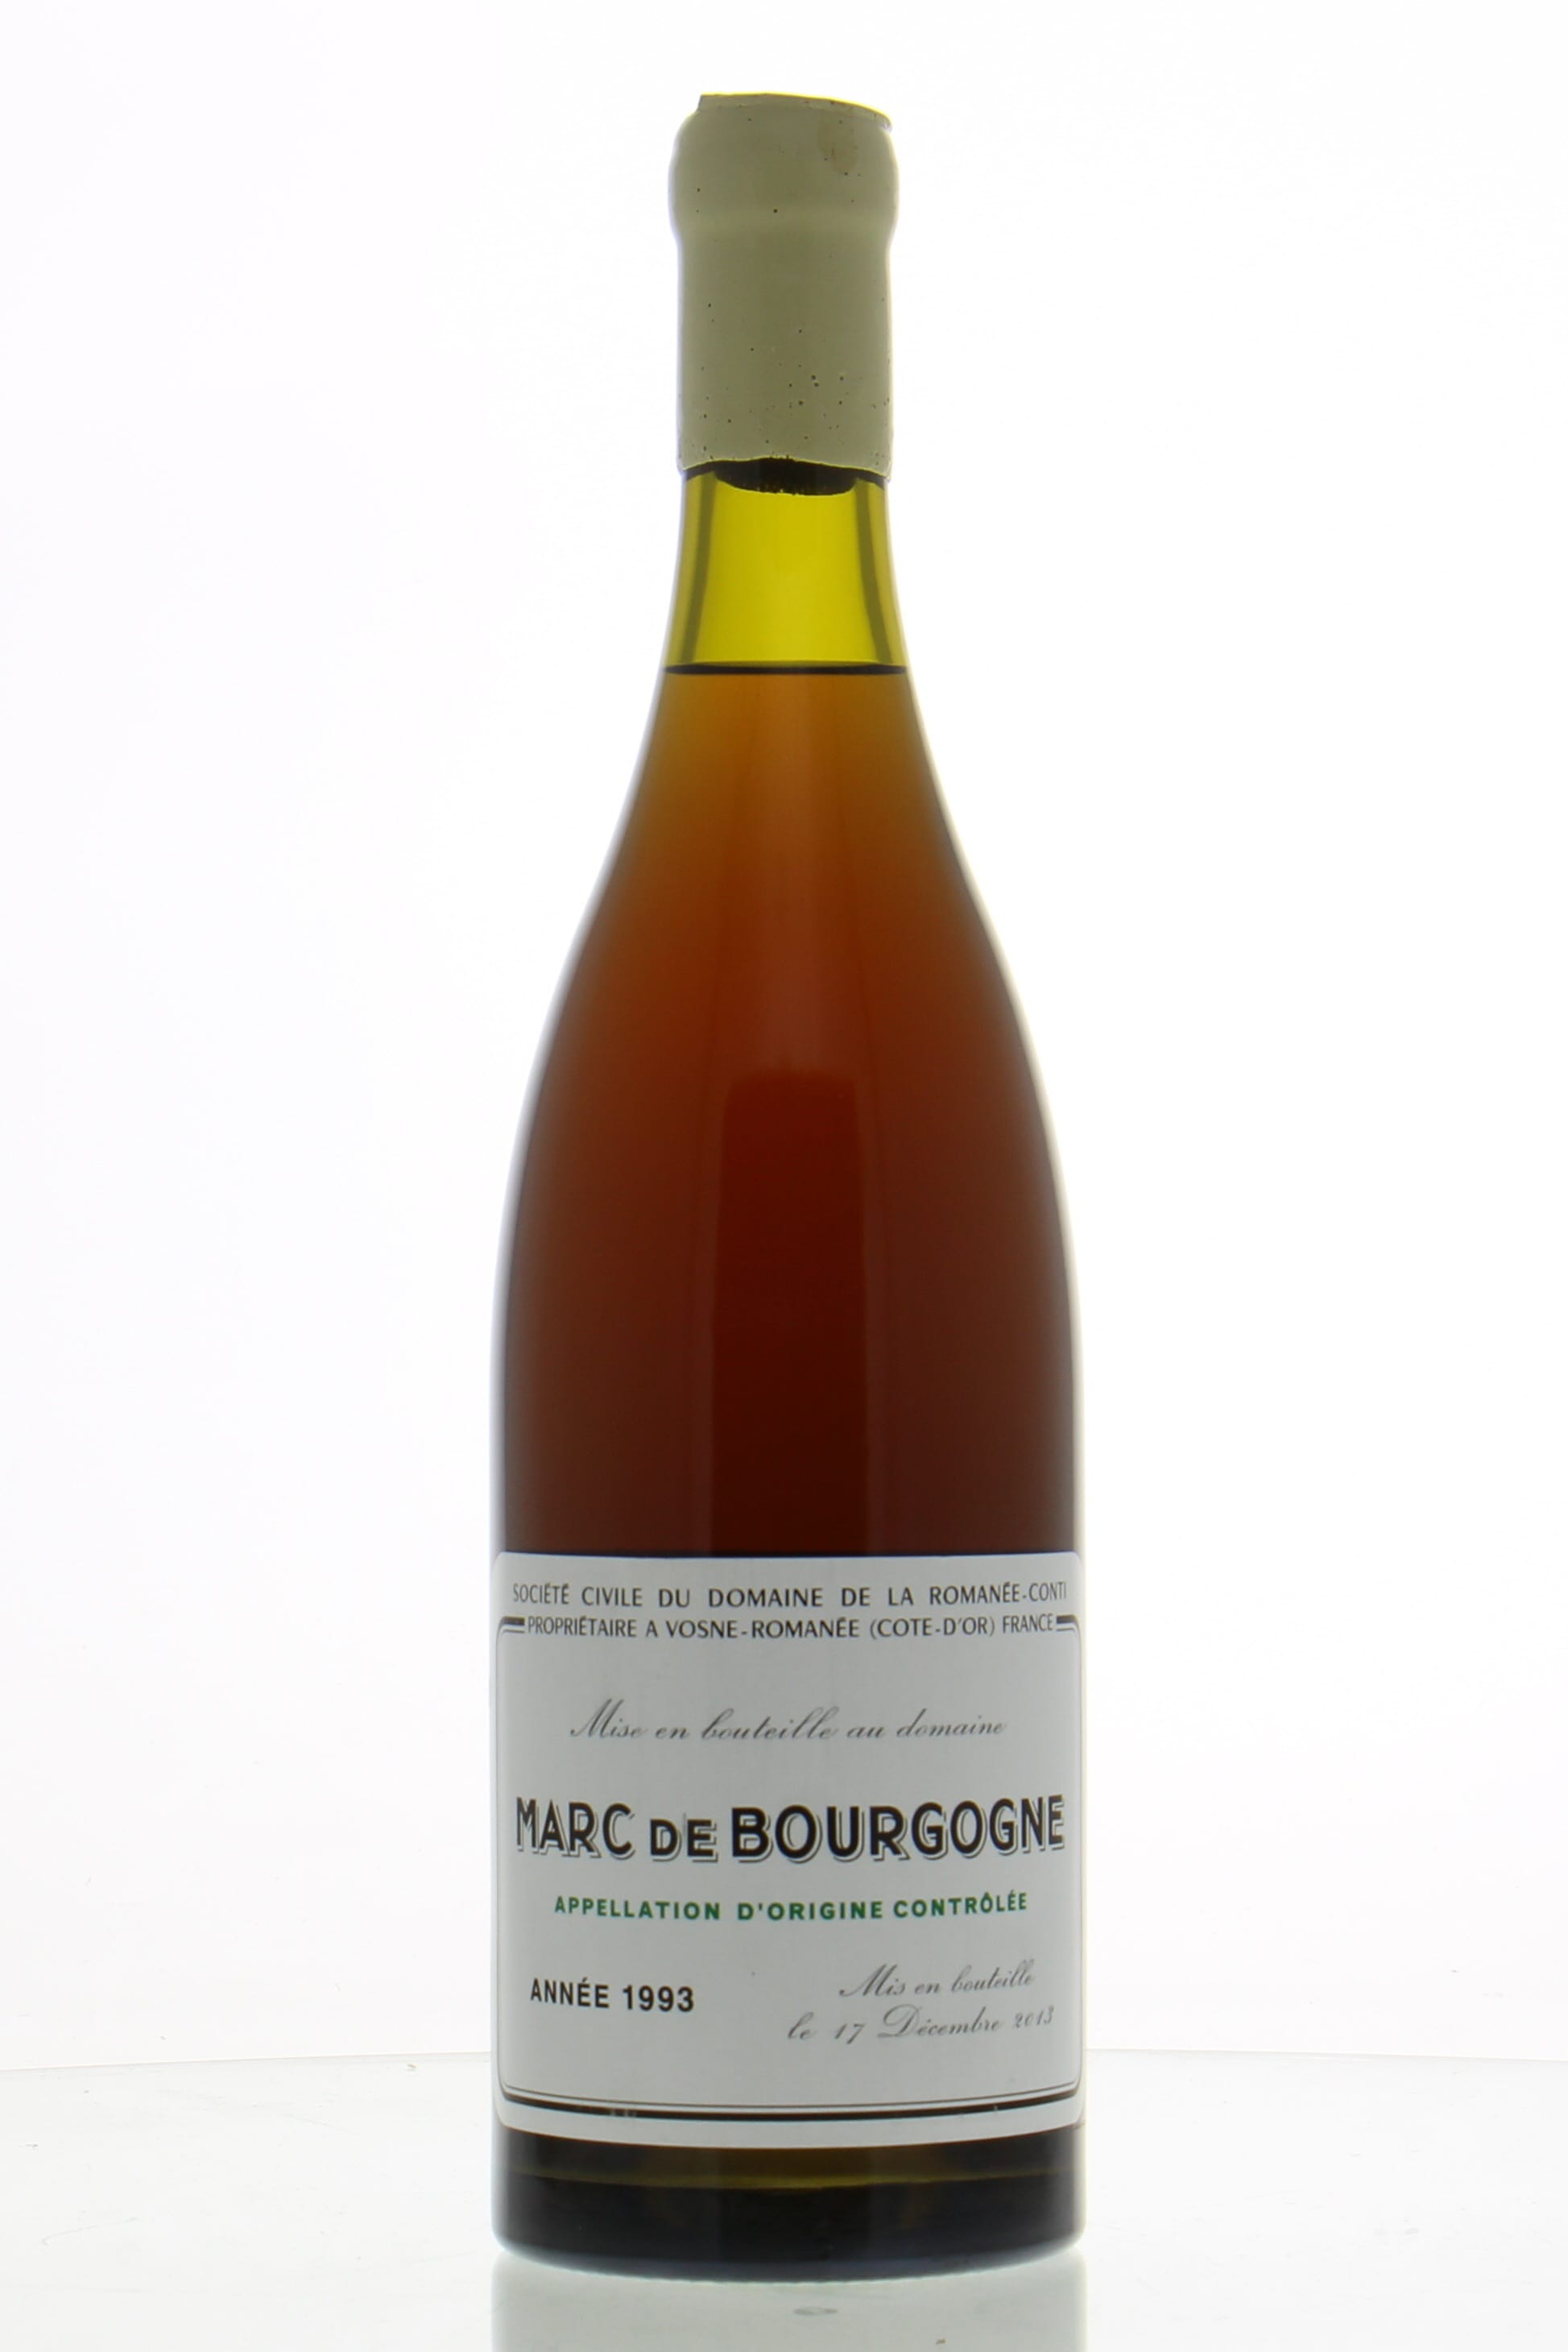 Domaine de la Romanee Conti - Marc de Bourgogne 1993